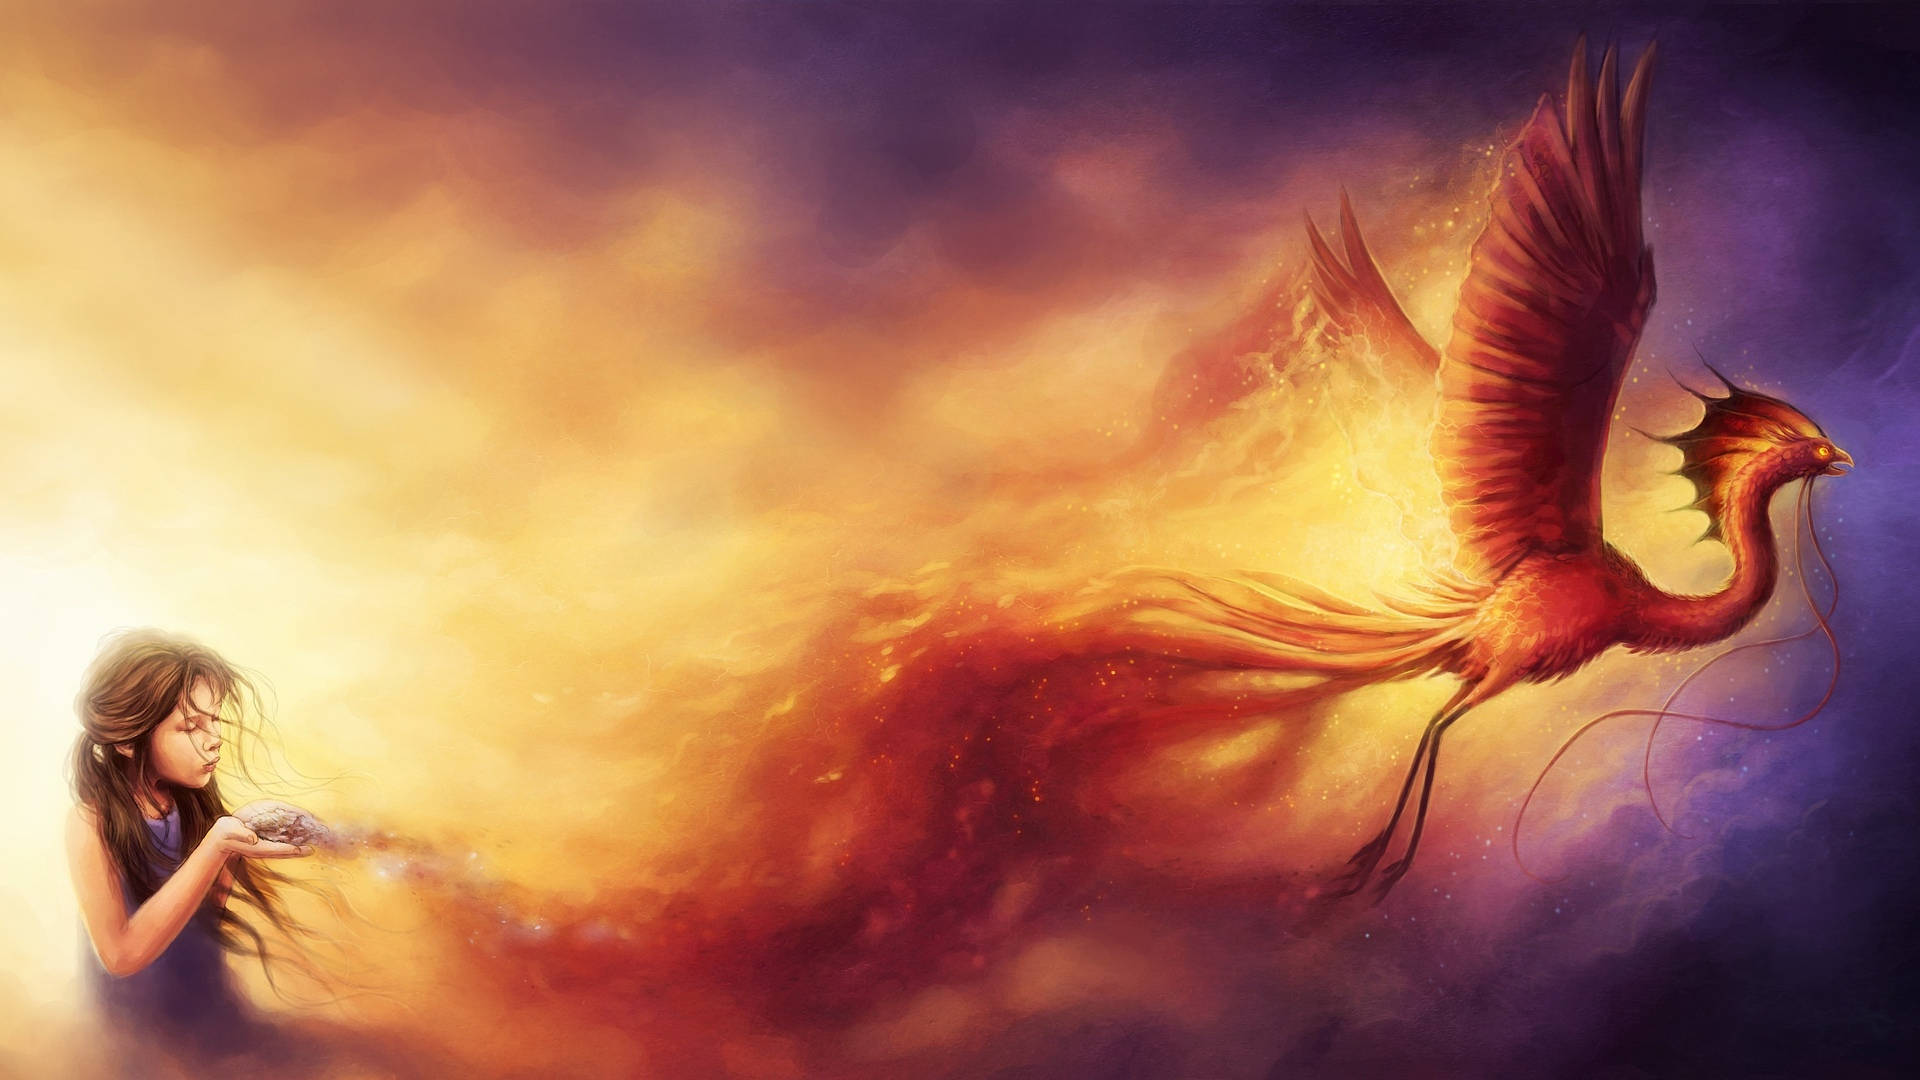 Dragon Fire Wings Art Wallpaper